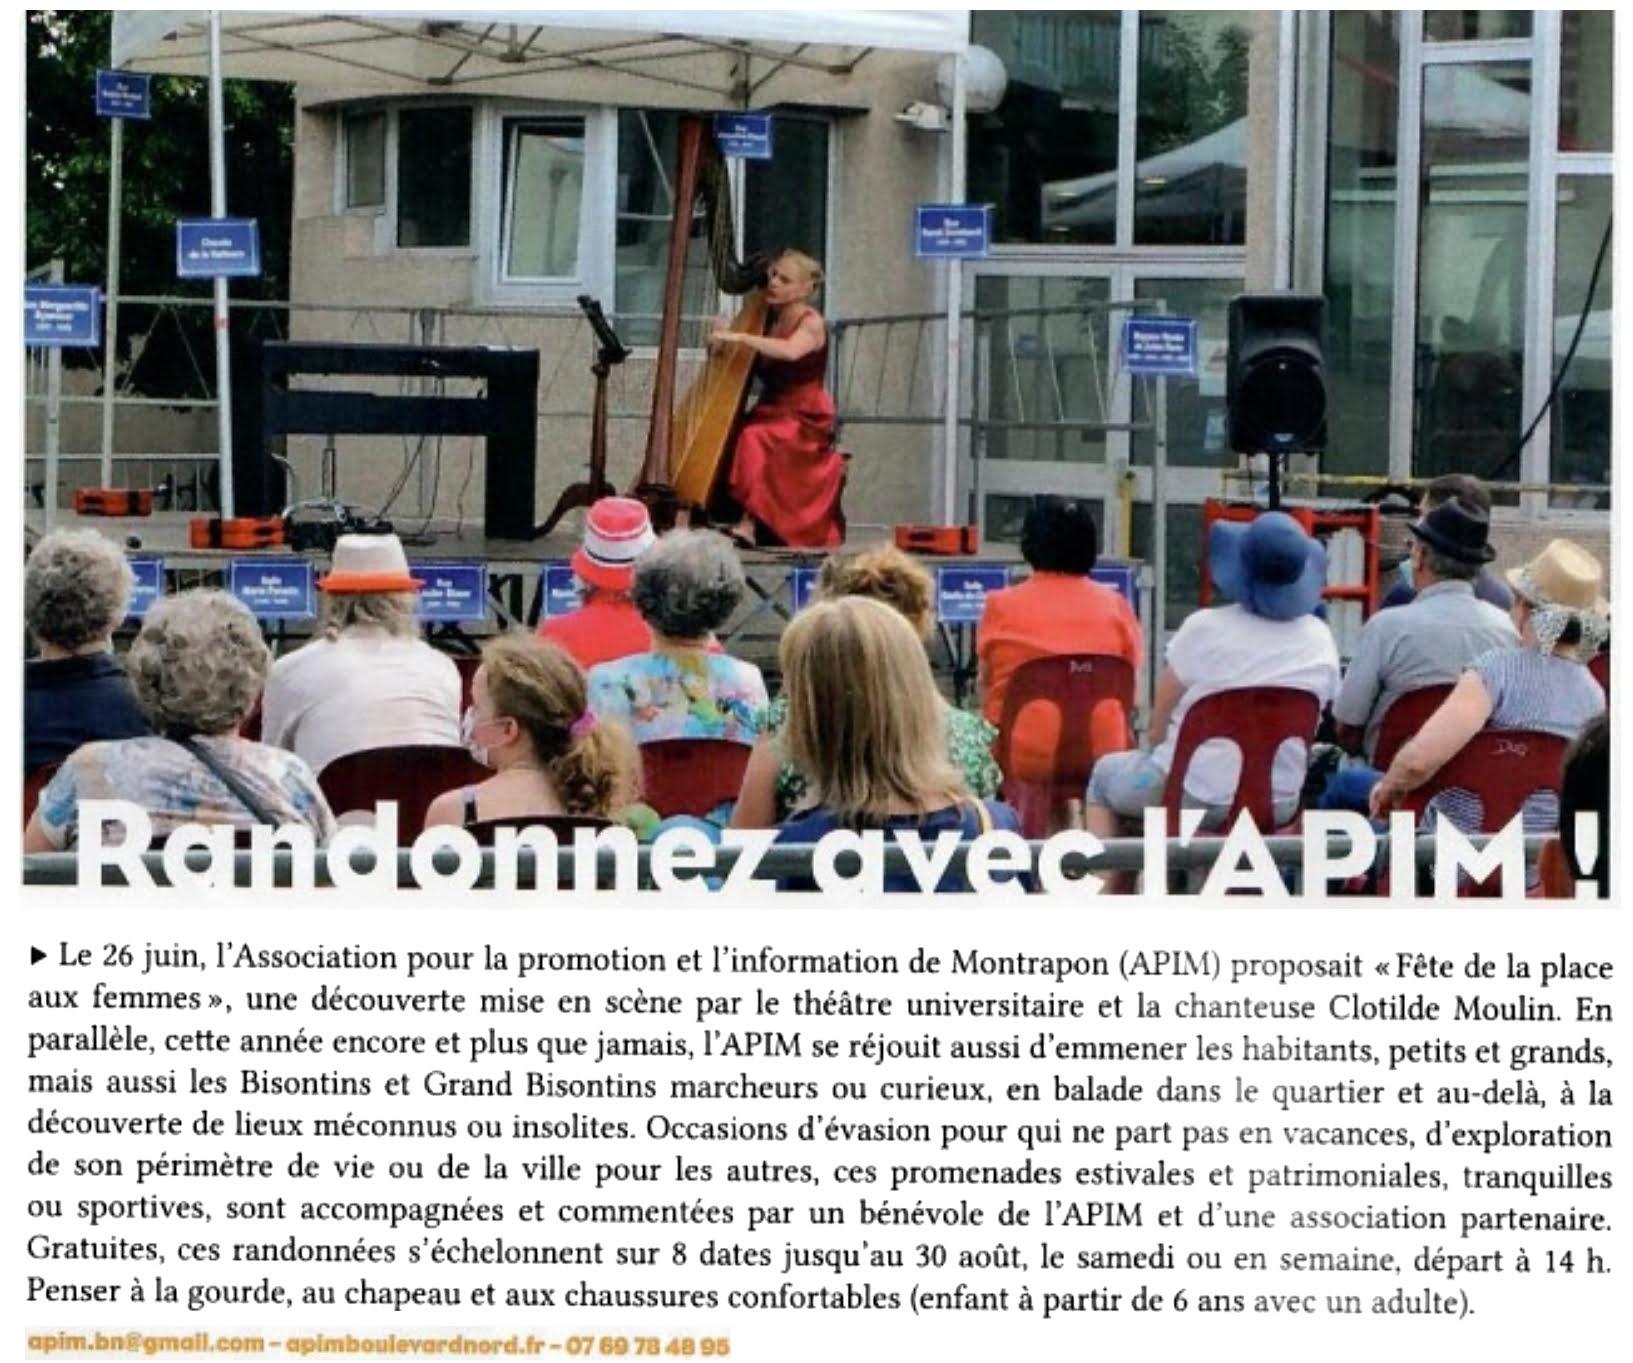 Le 26 juin, l'Association pour la promotion et l'Information de Montrapon (APIM) proposait "Fête de la place aux femmes", une découverte mise en scène par le théâtre universitaire et la chanteur Clotilde Moulin.